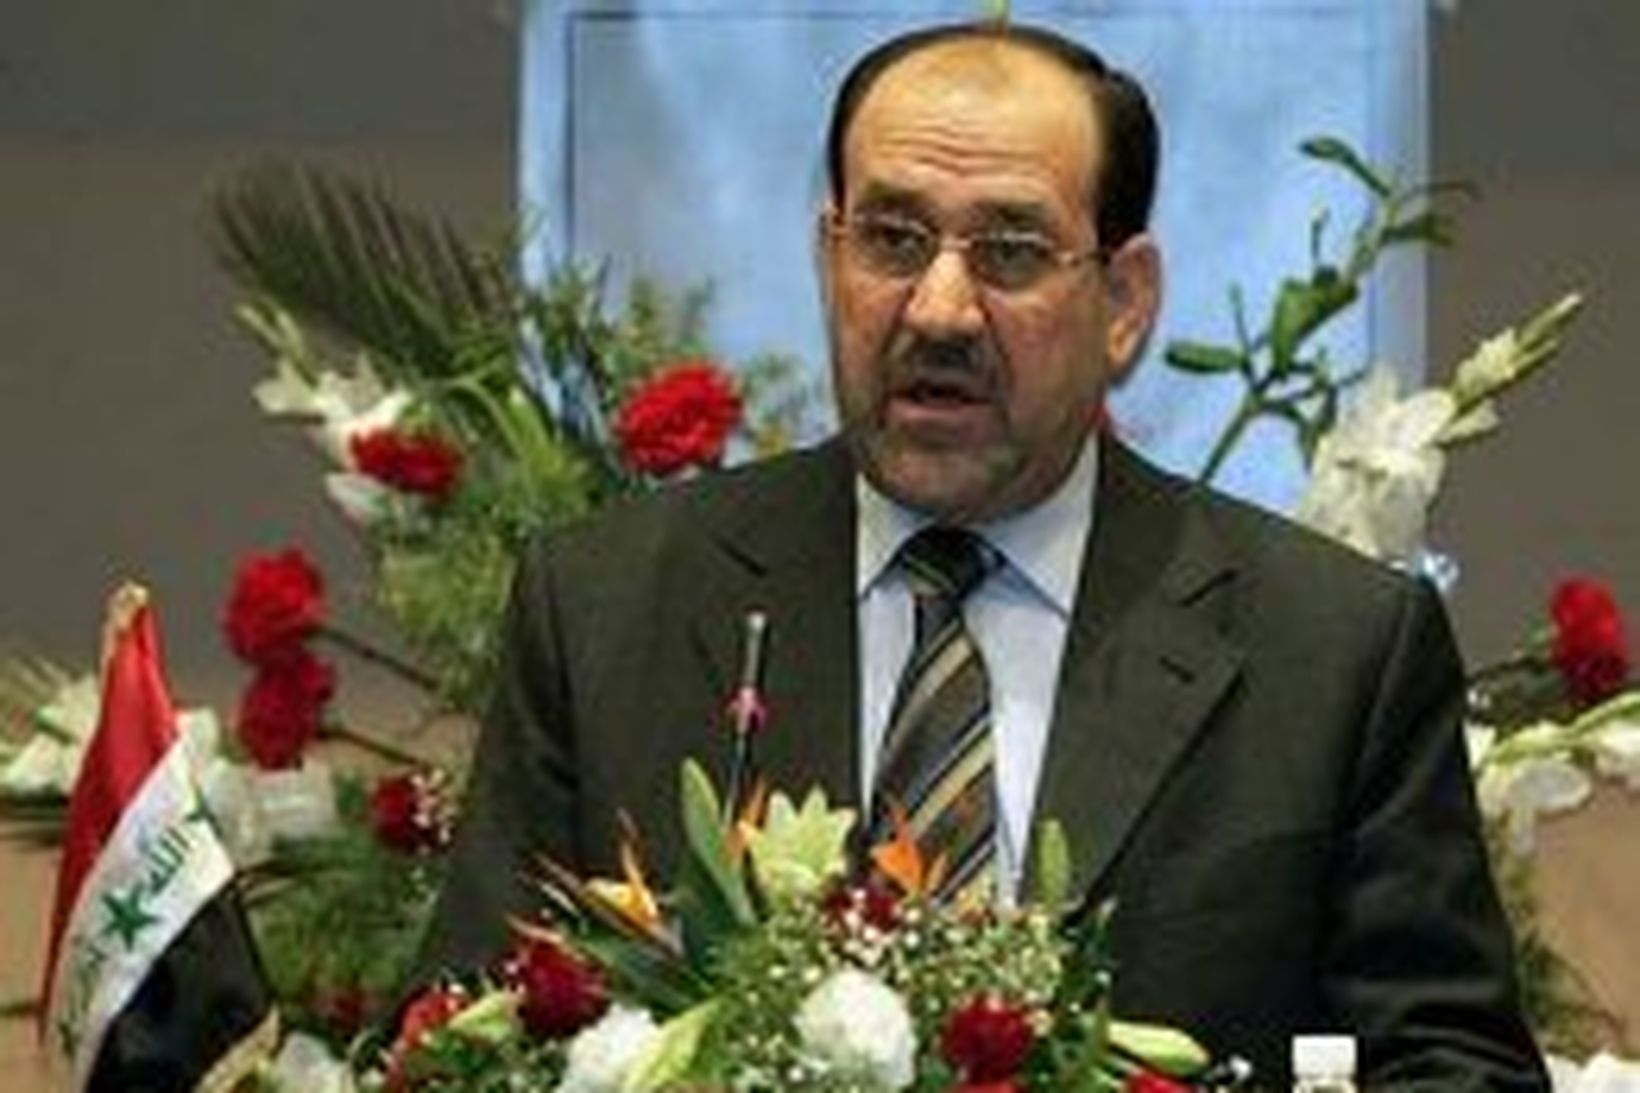 al-Maliki segir ekkert geta komið í veg fyrir aftöku Saddams …